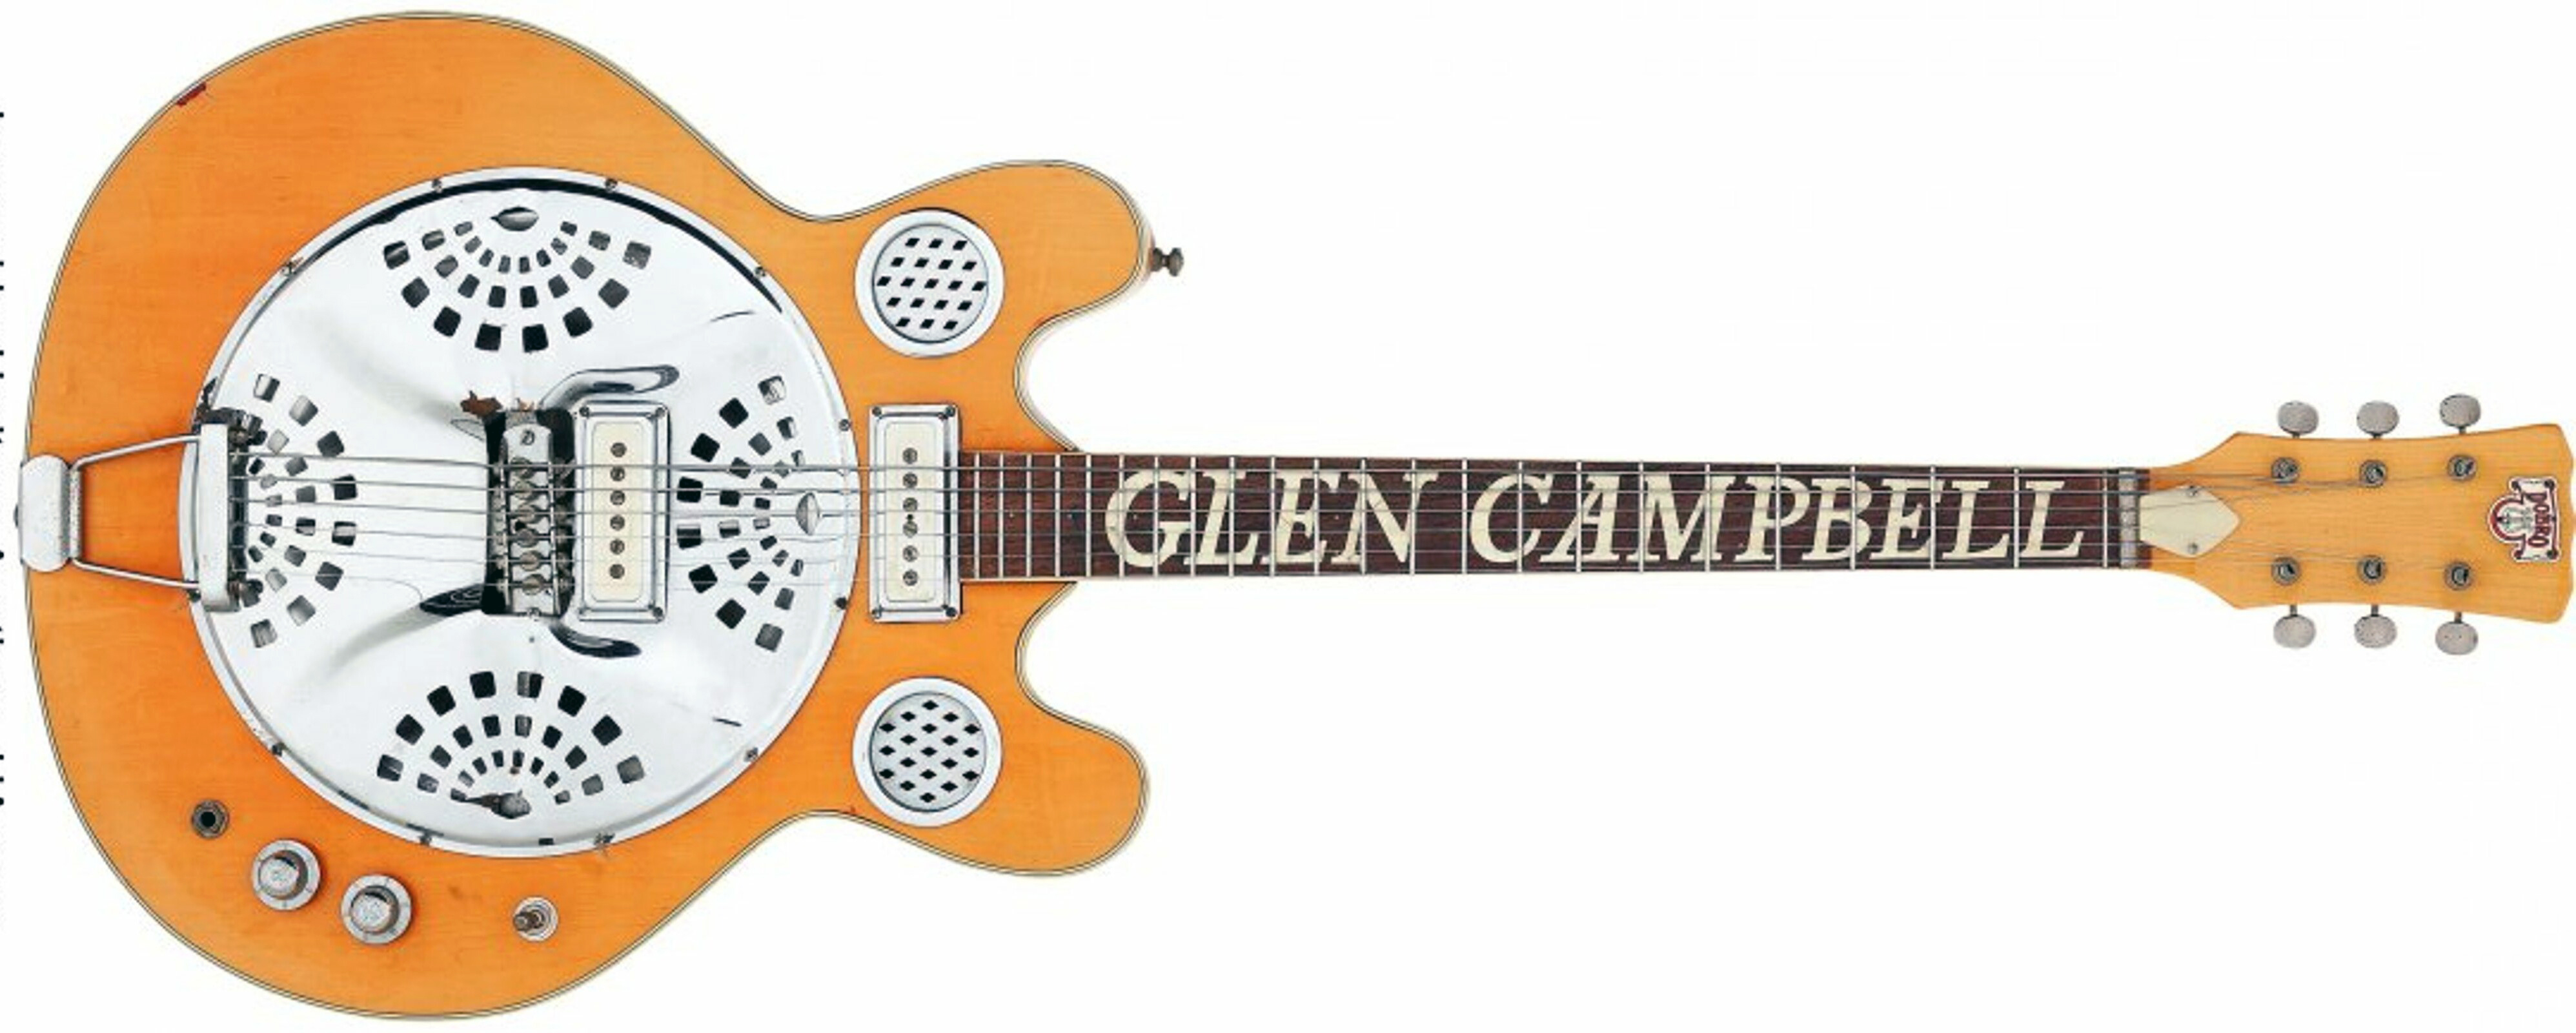 Glen Campbell's Mosrite D100 Californian Auction picture